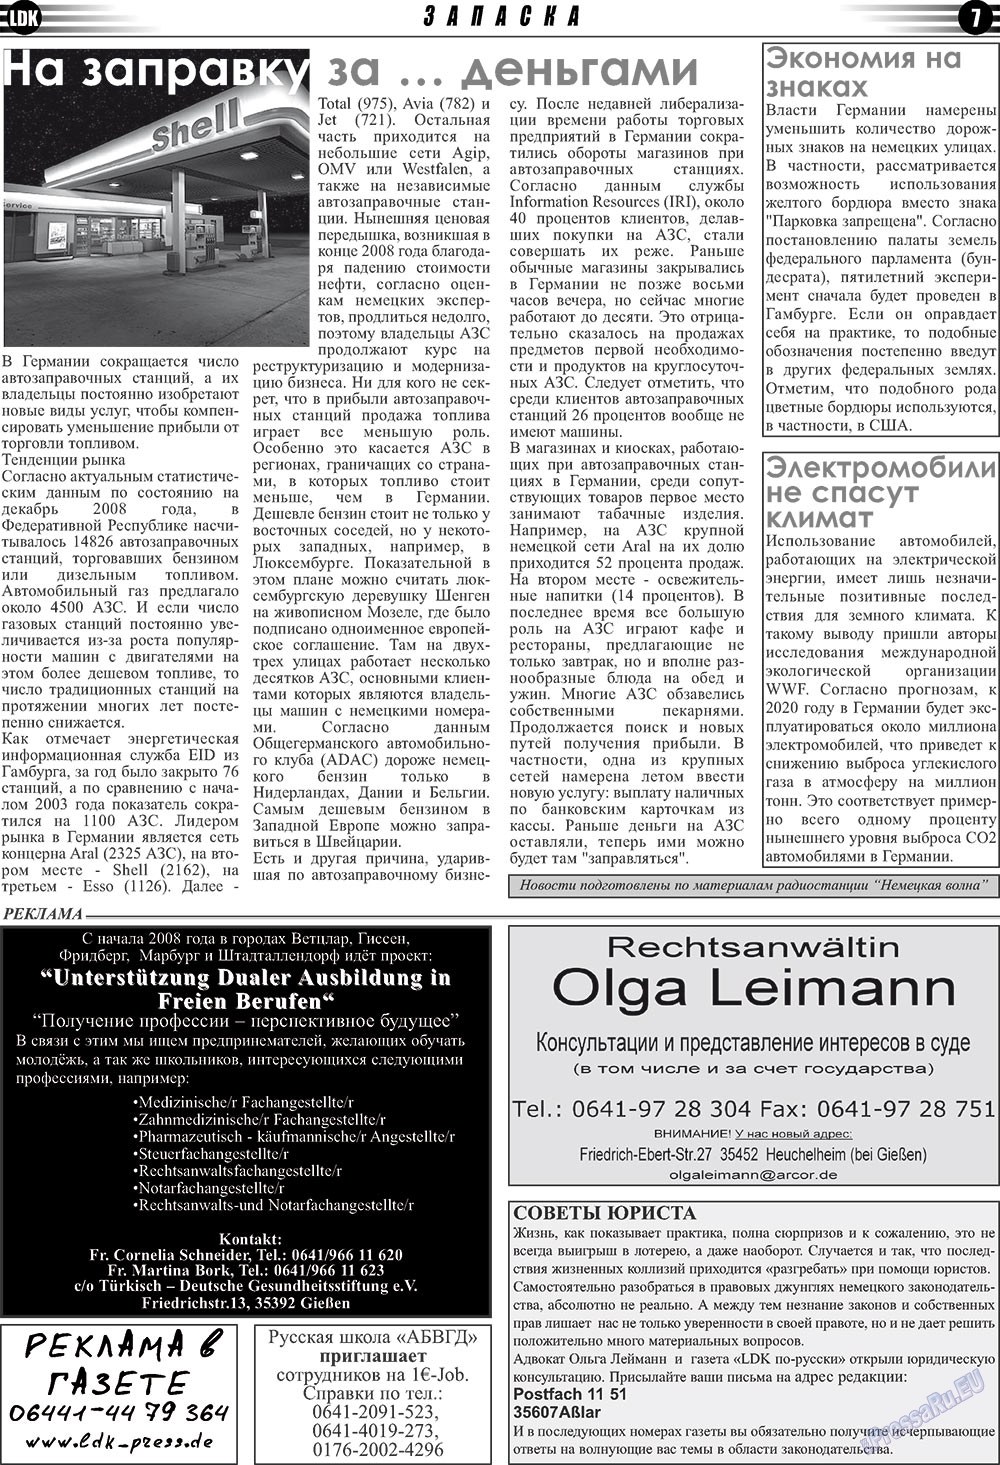 LDK по-русски (газета). 2009 год, номер 4, стр. 7